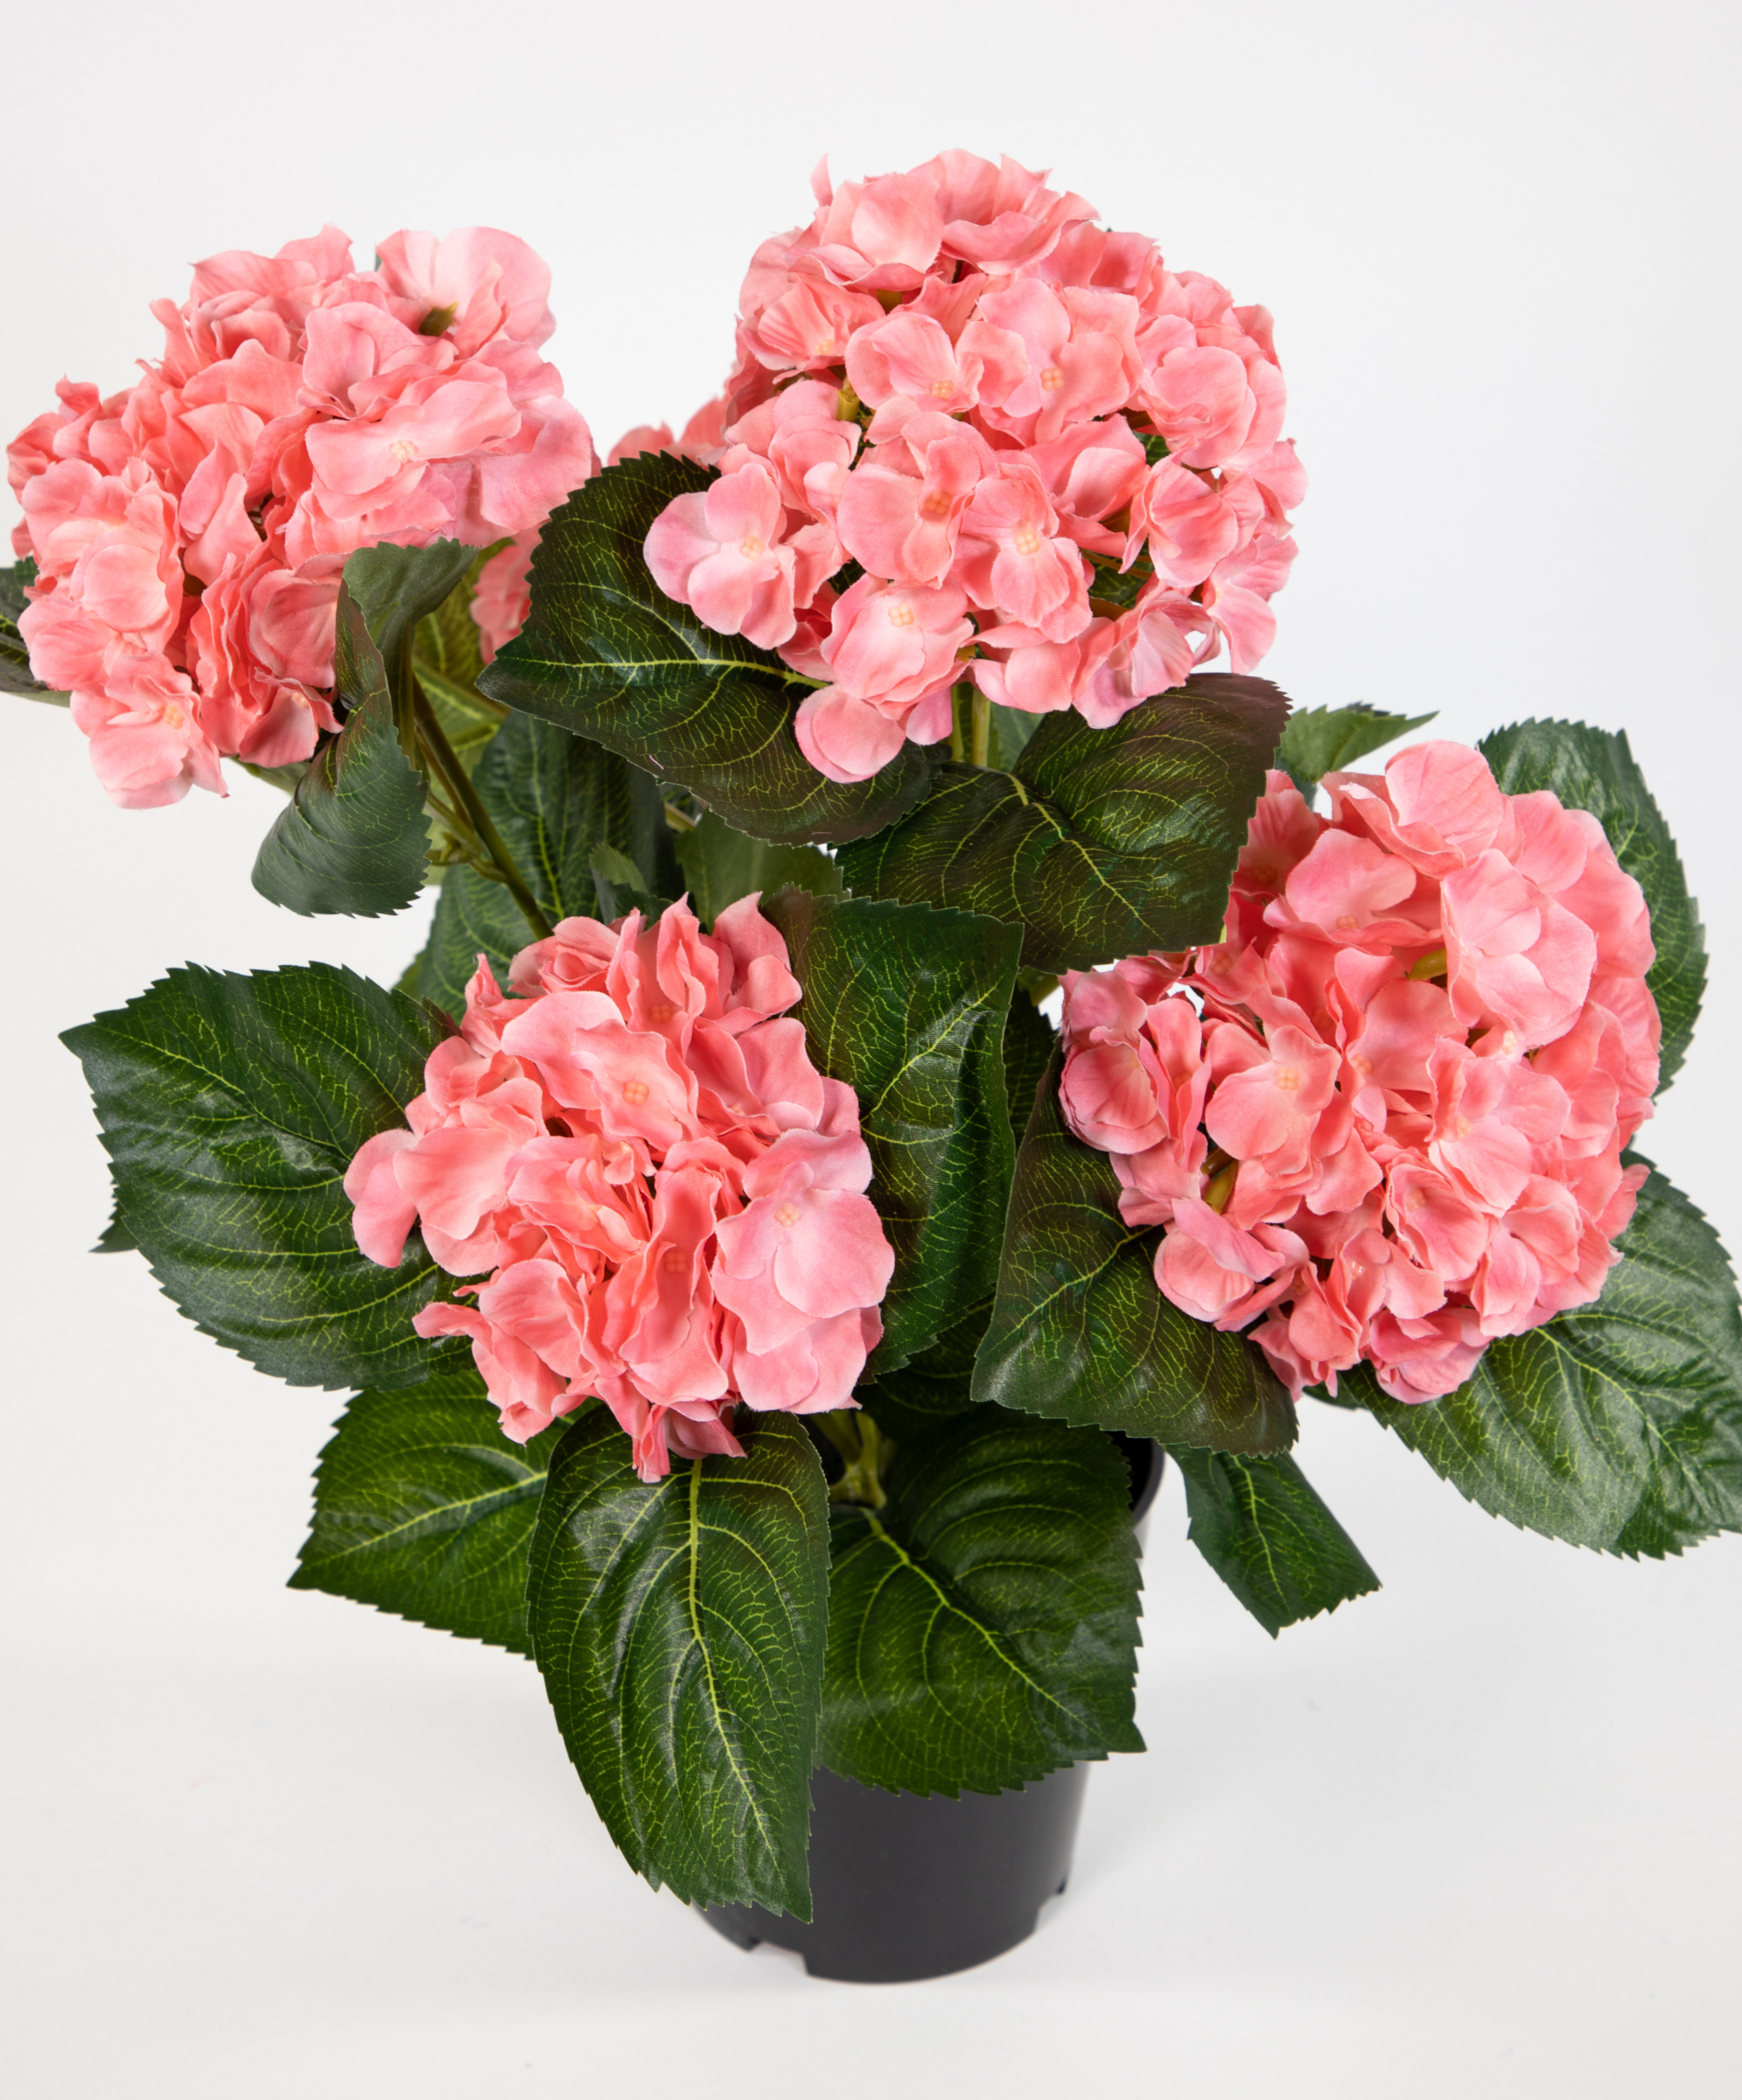 Hortensienbusch Deluxe 42cm rosa-pink im Topf LM Kunstpflanzen künstliche Hortensie Pflanzen Blumen